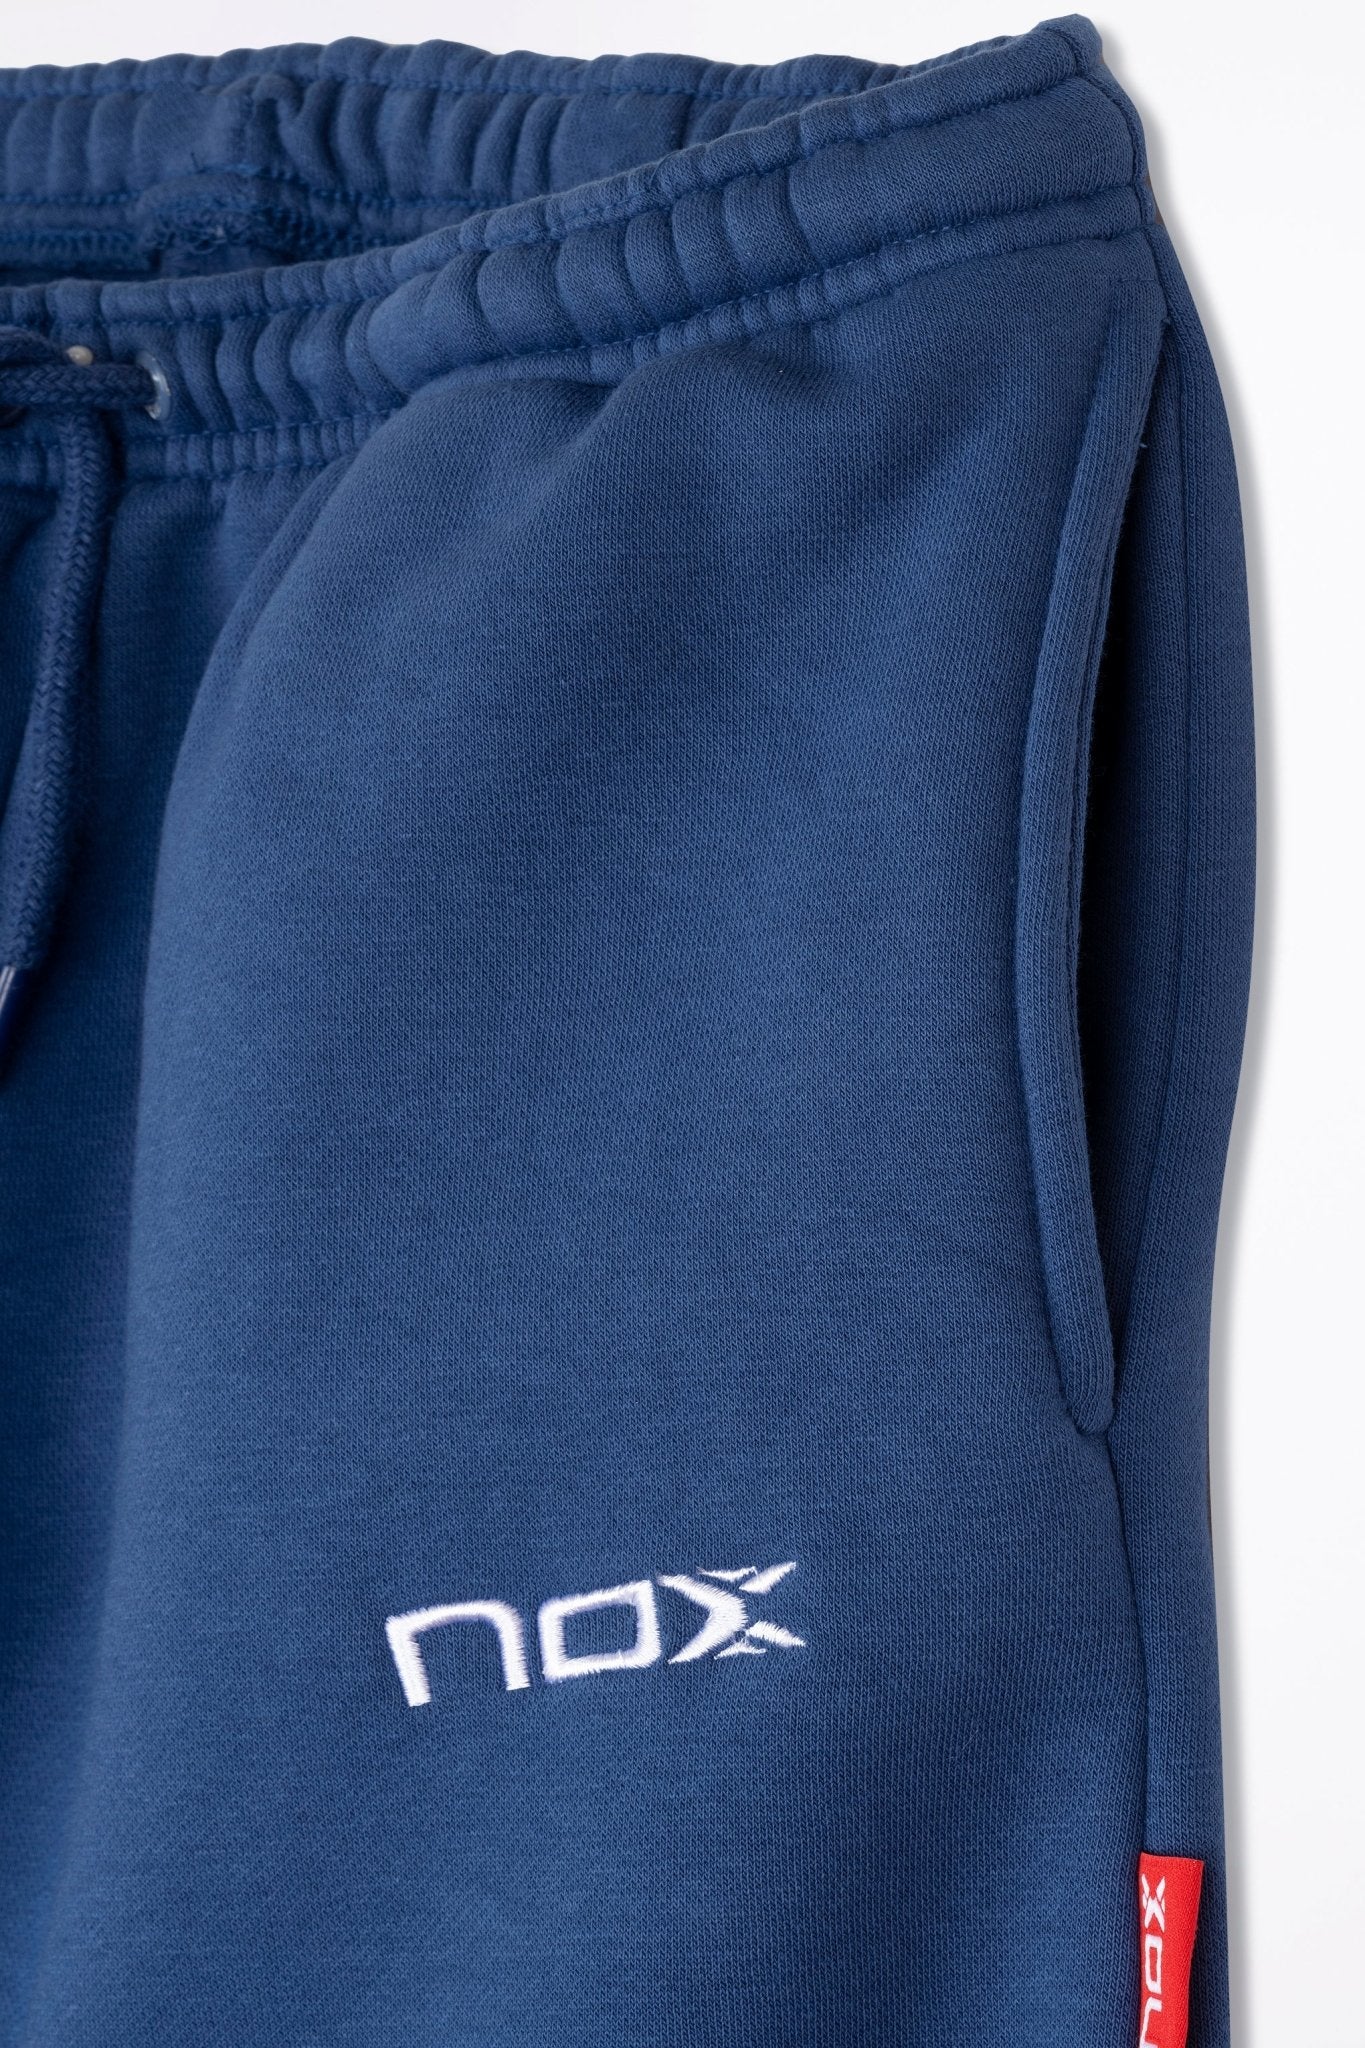 Pantalón chandal mujer BASIC - CASUAL azul marino – NOX